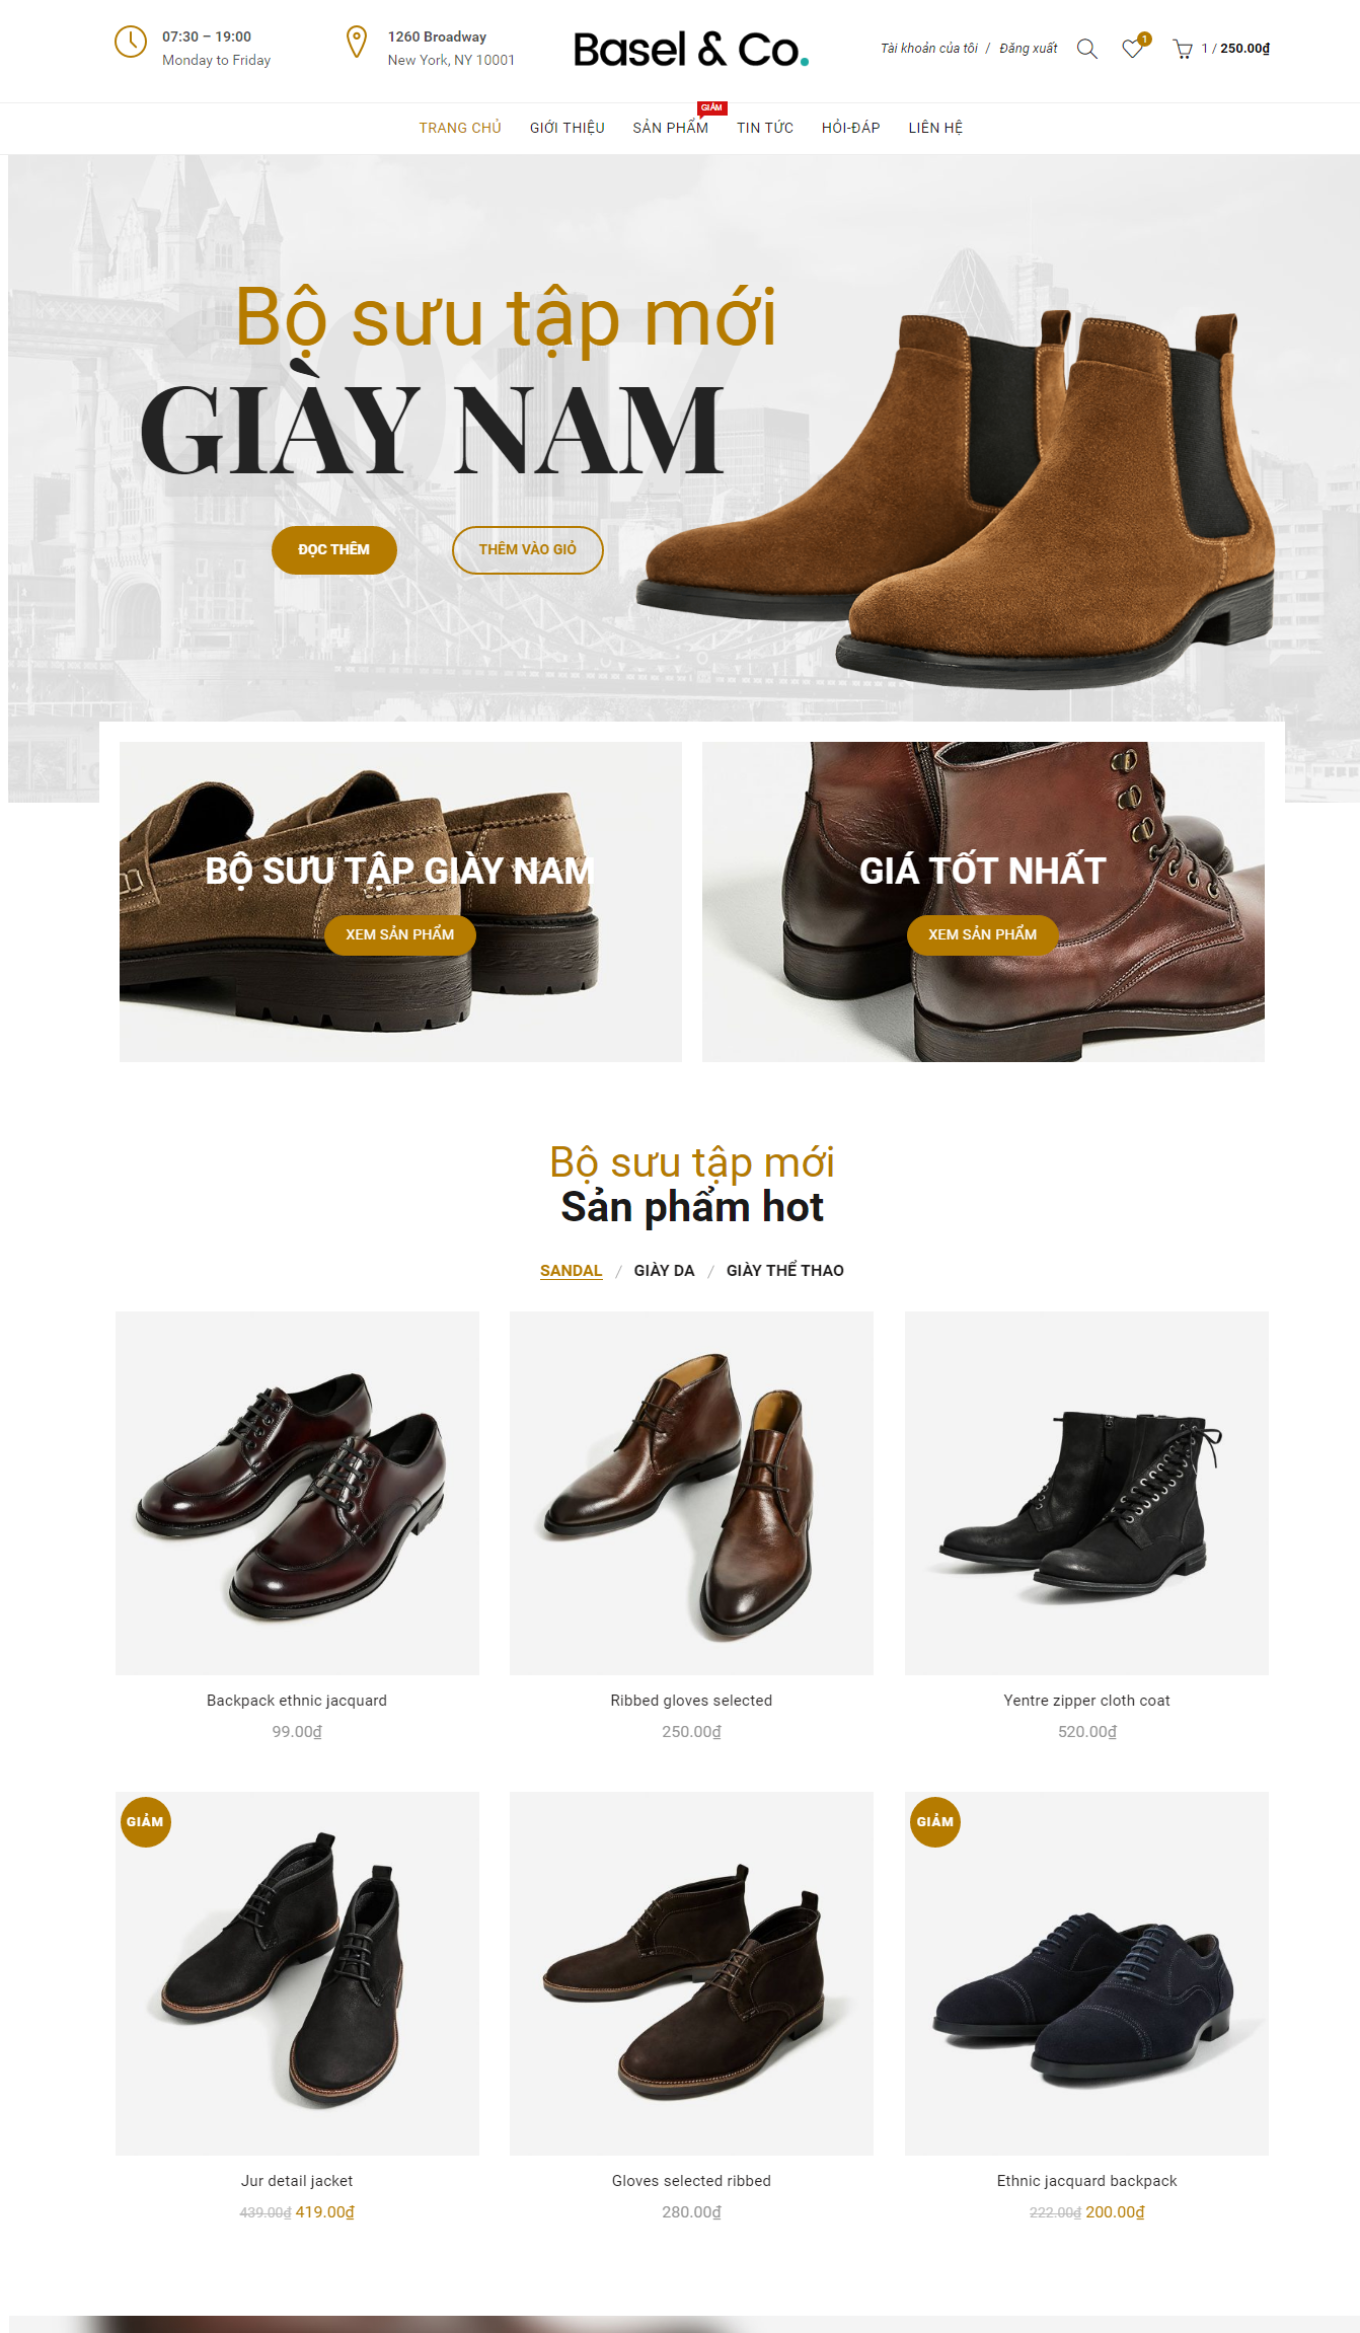 Mẫu website bán hàng giày-dép - Basel2